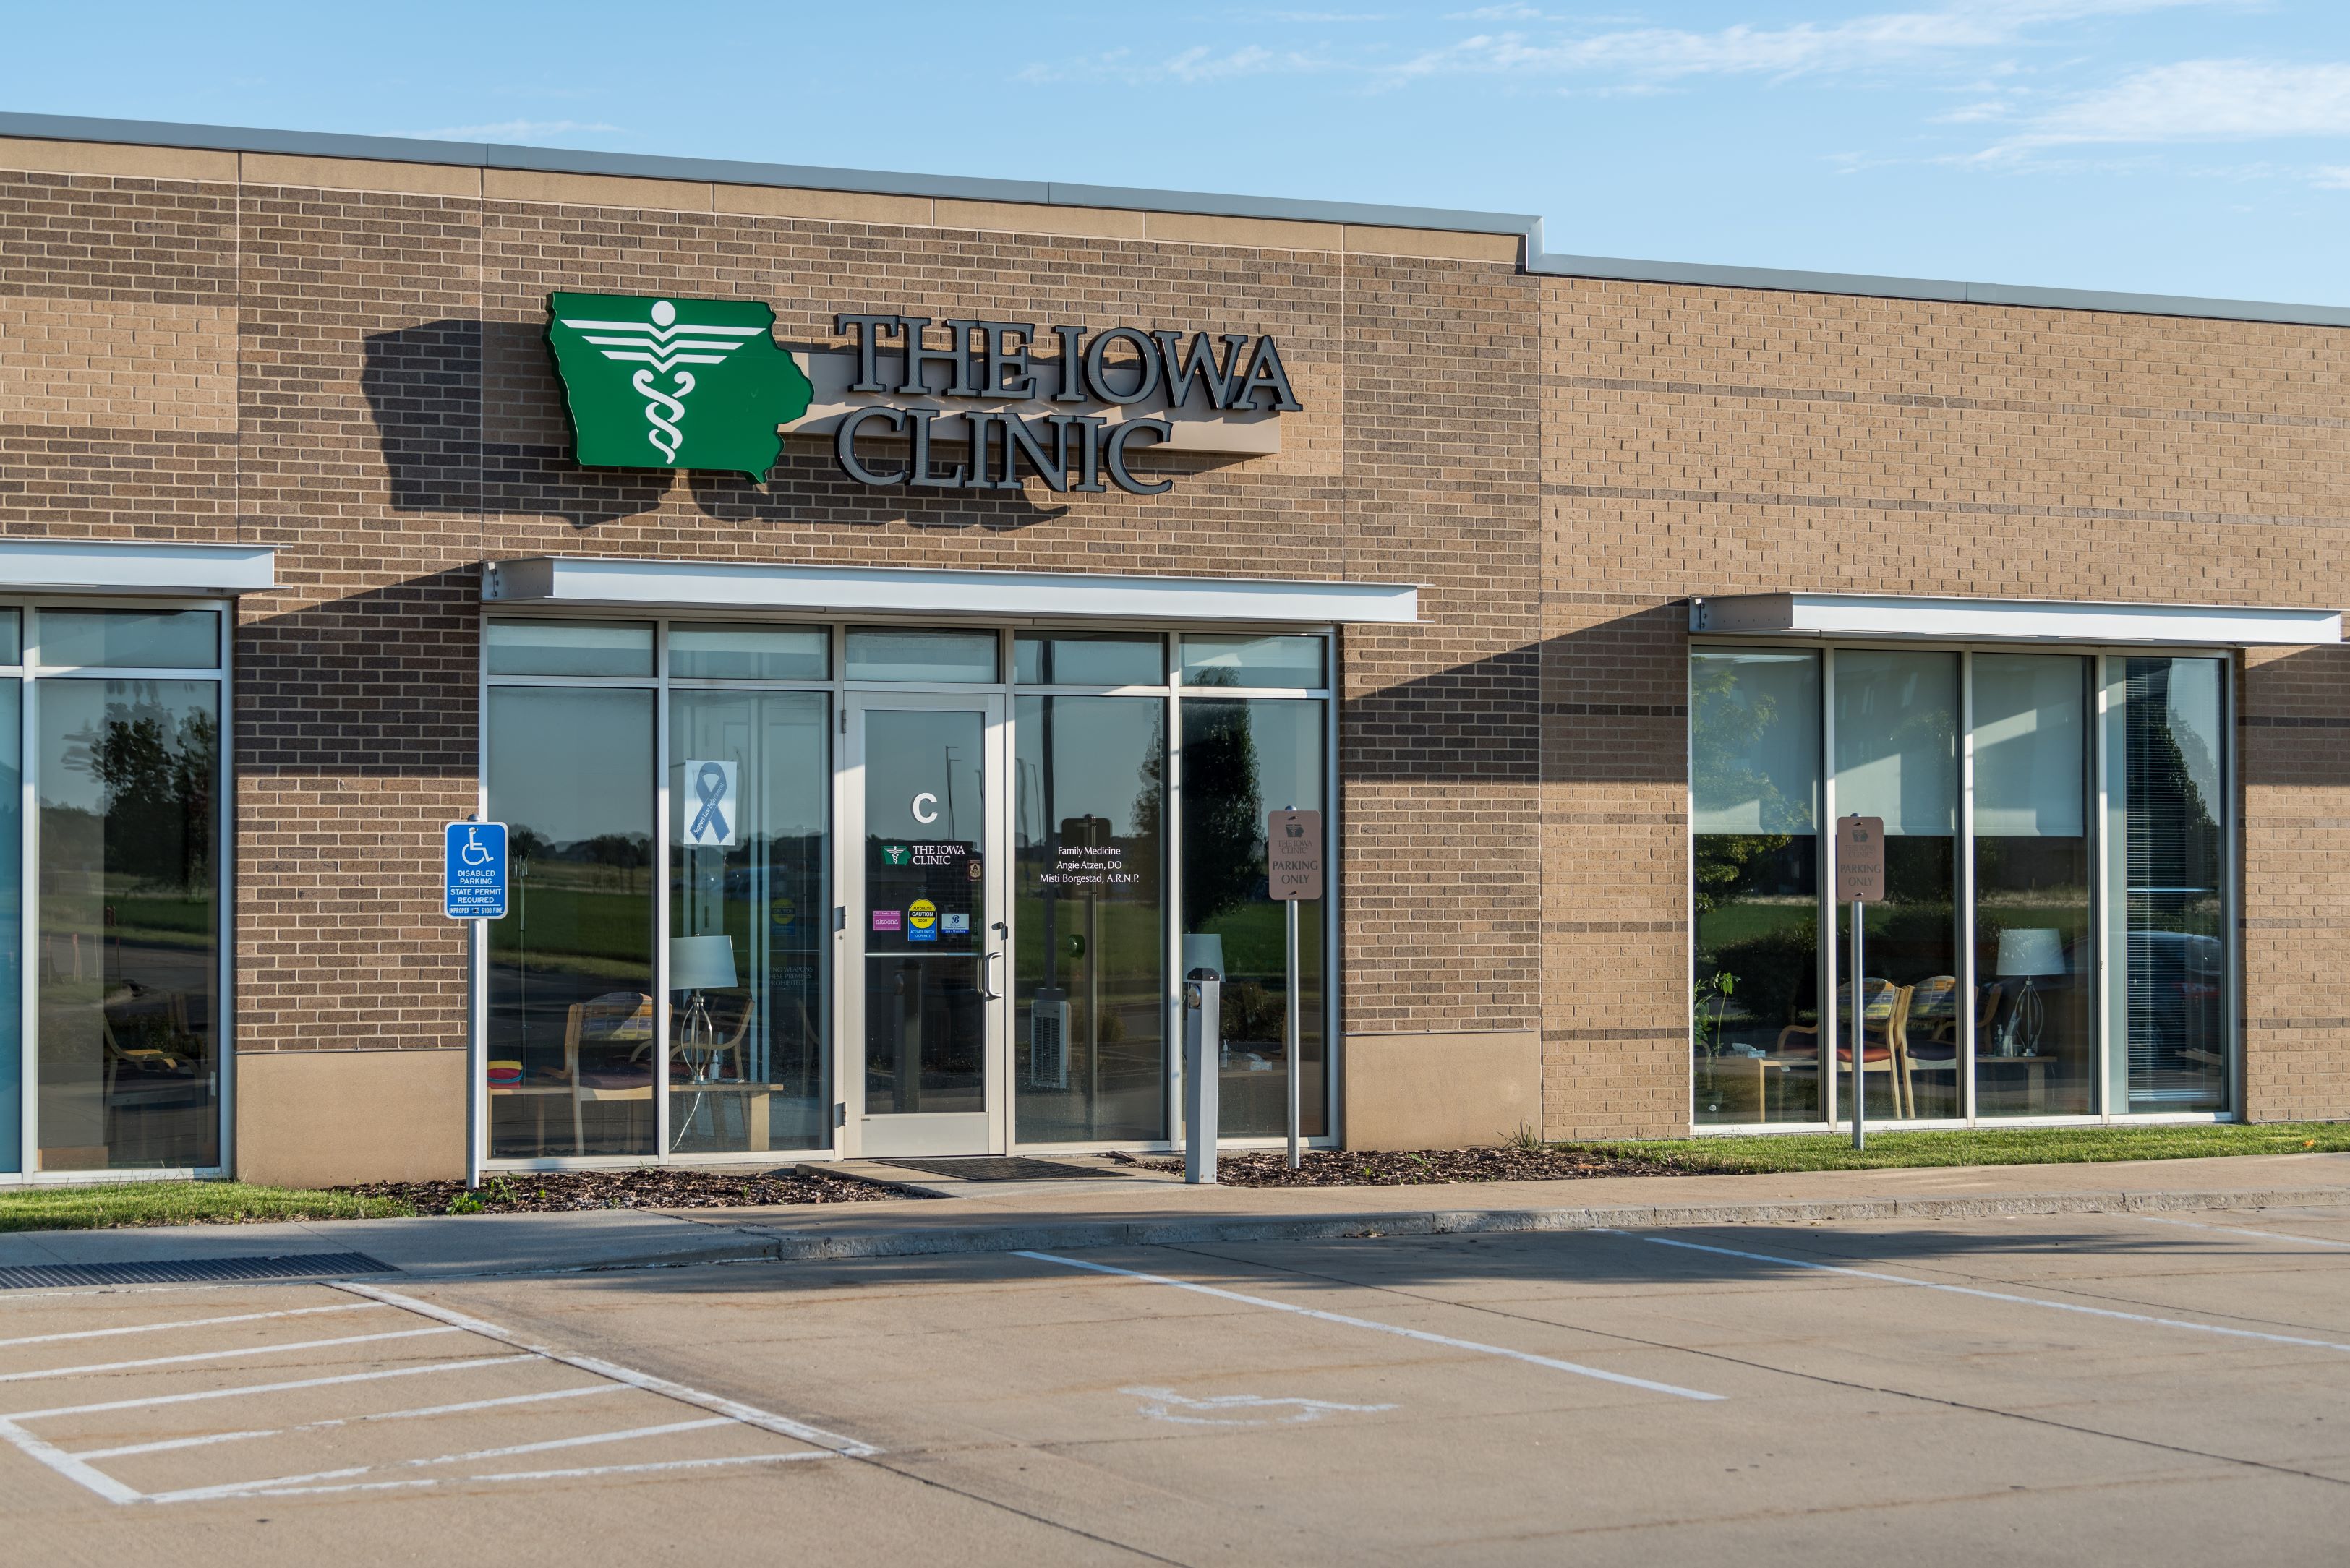 The Iowa Clinic Altoona